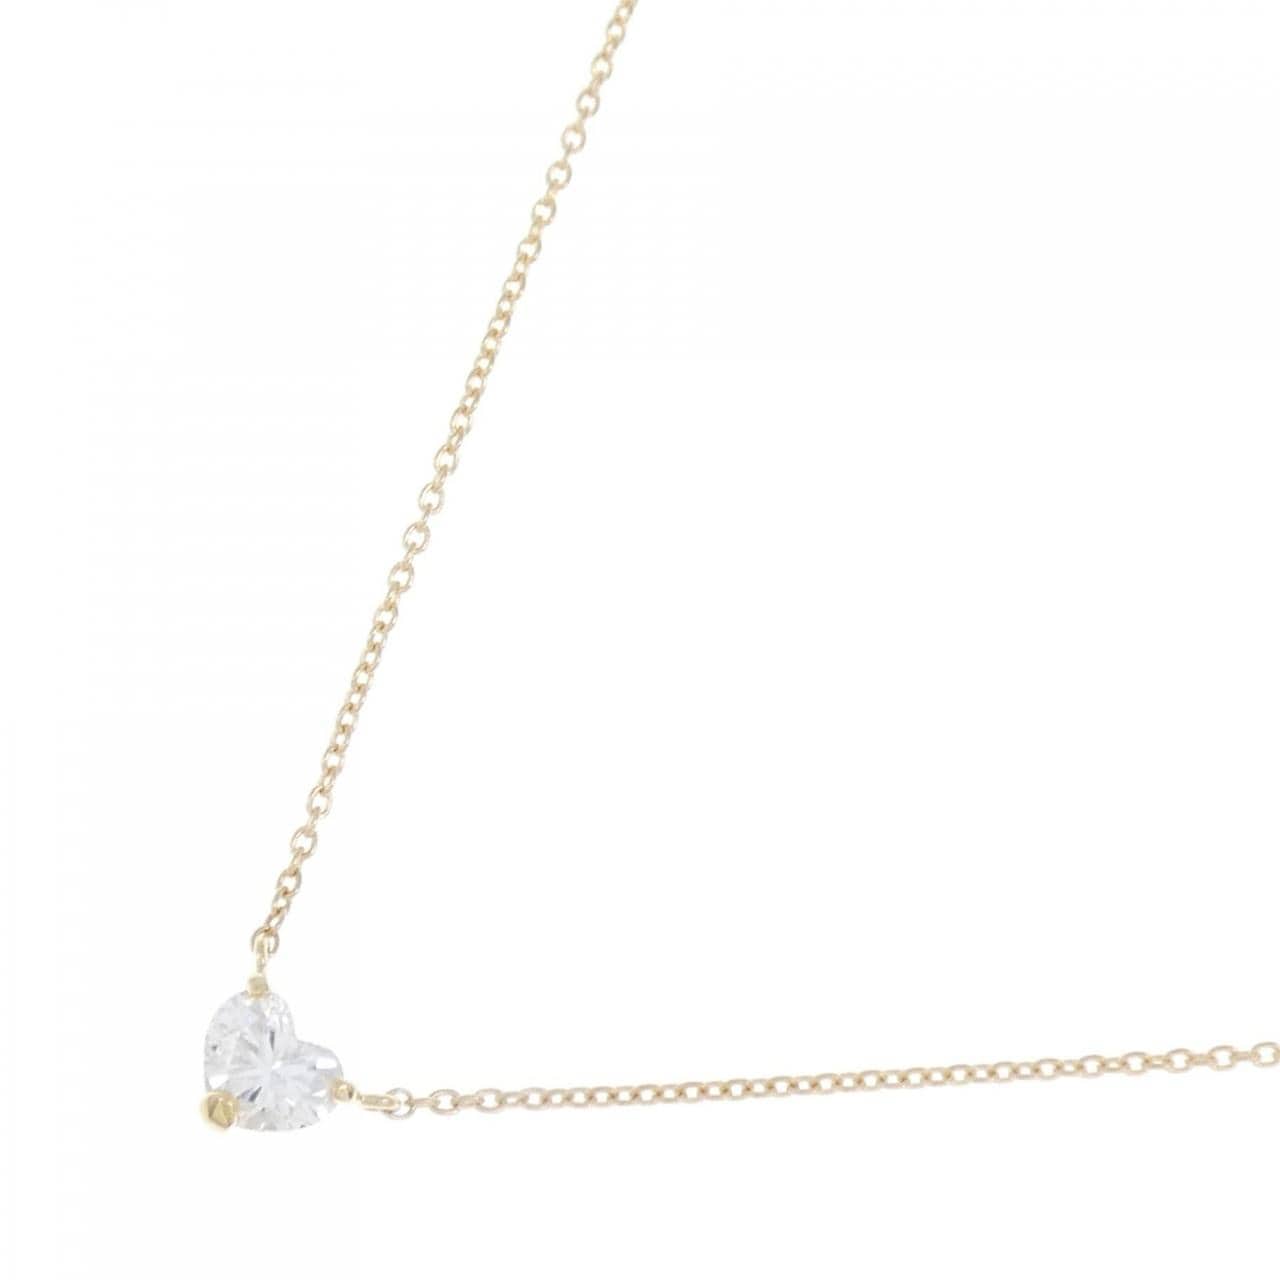 [Remake] K18YG Diamond Necklace 0.325CT G VS2 Heart Shape